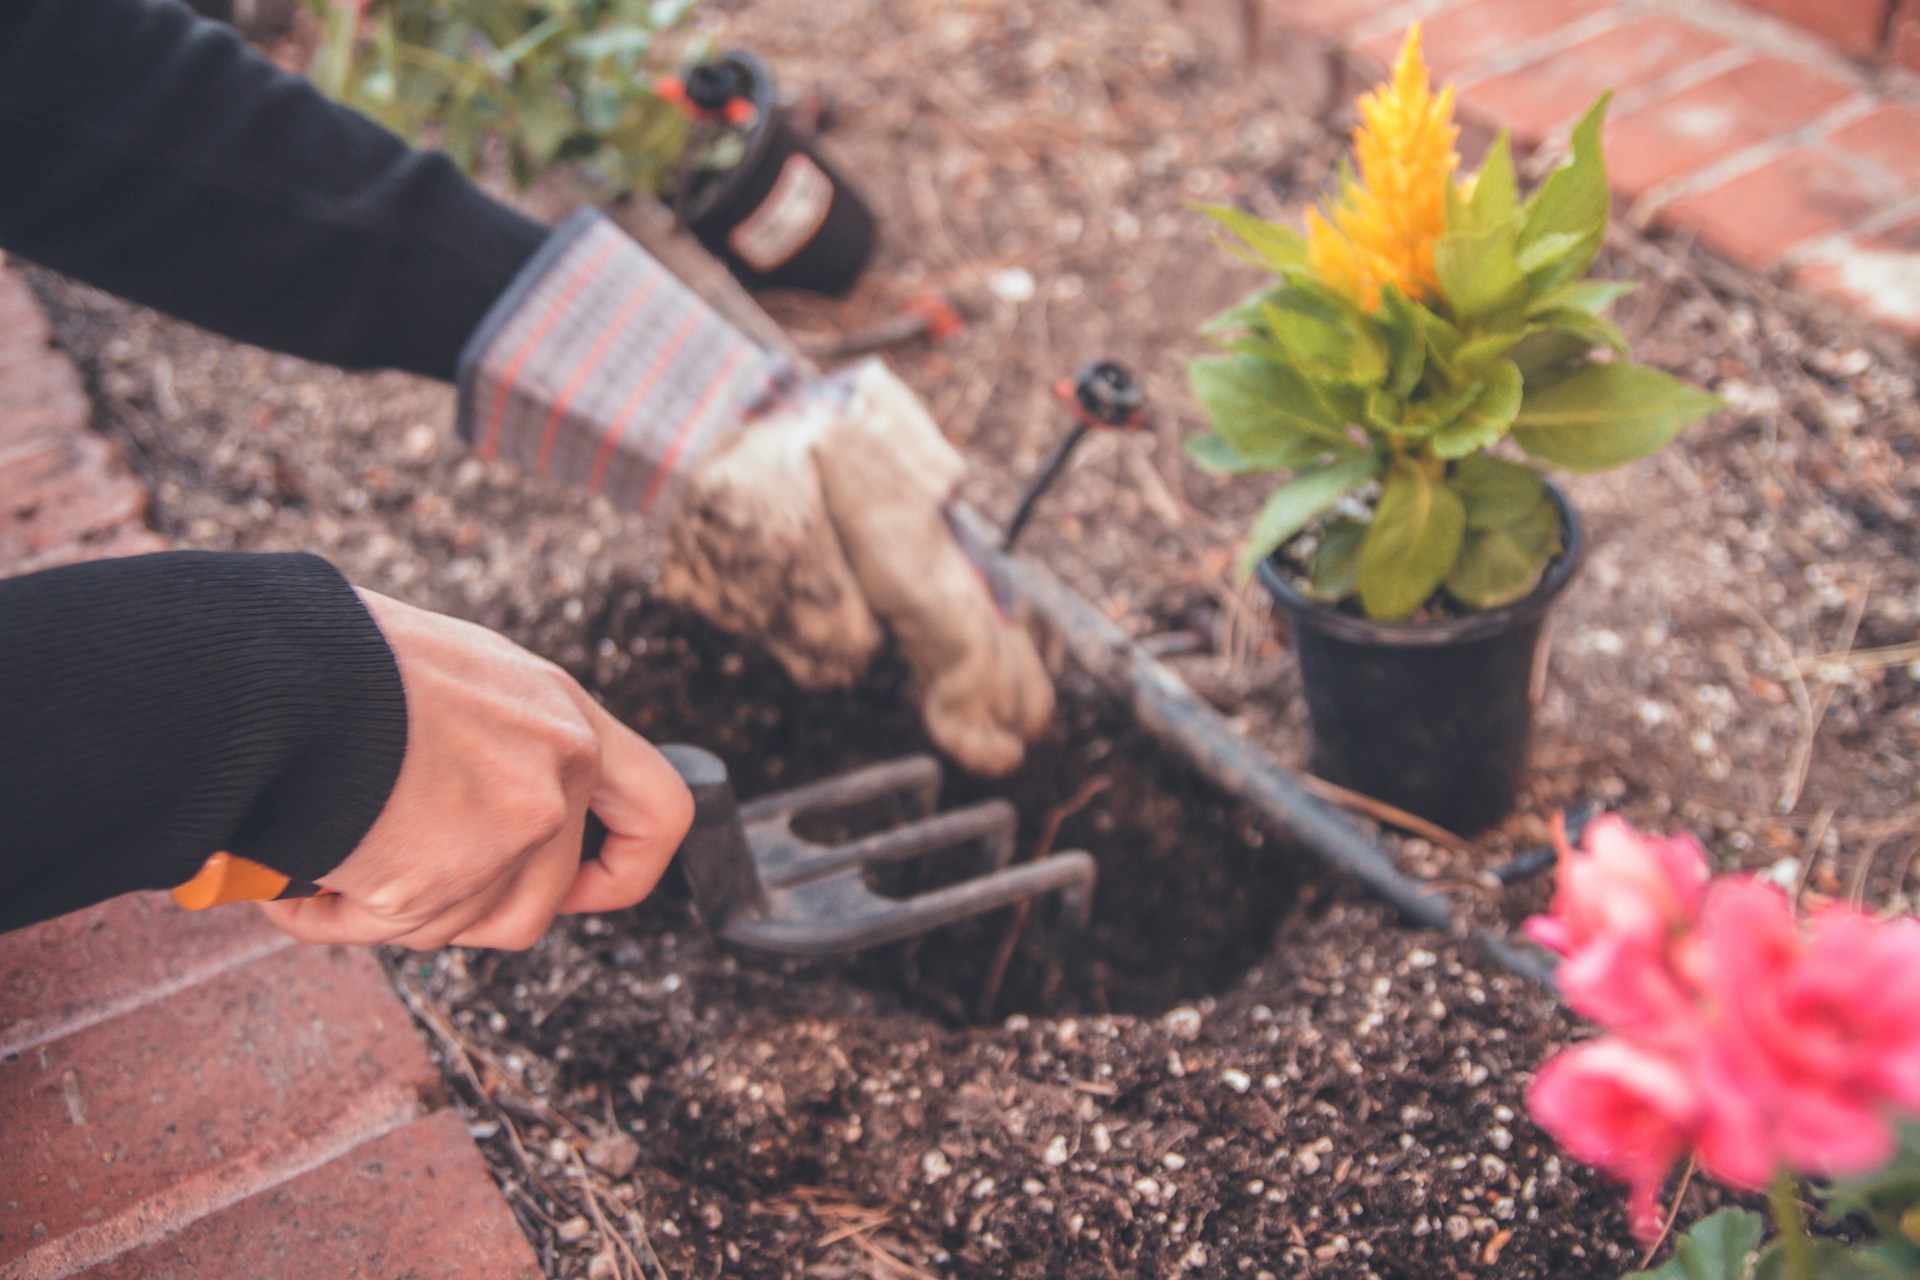 Γνωστά «άγνωστα» tips κηπουρικής που καλό είναι να τα αποφύγεις αν θες να έχεις υγιή φυτά